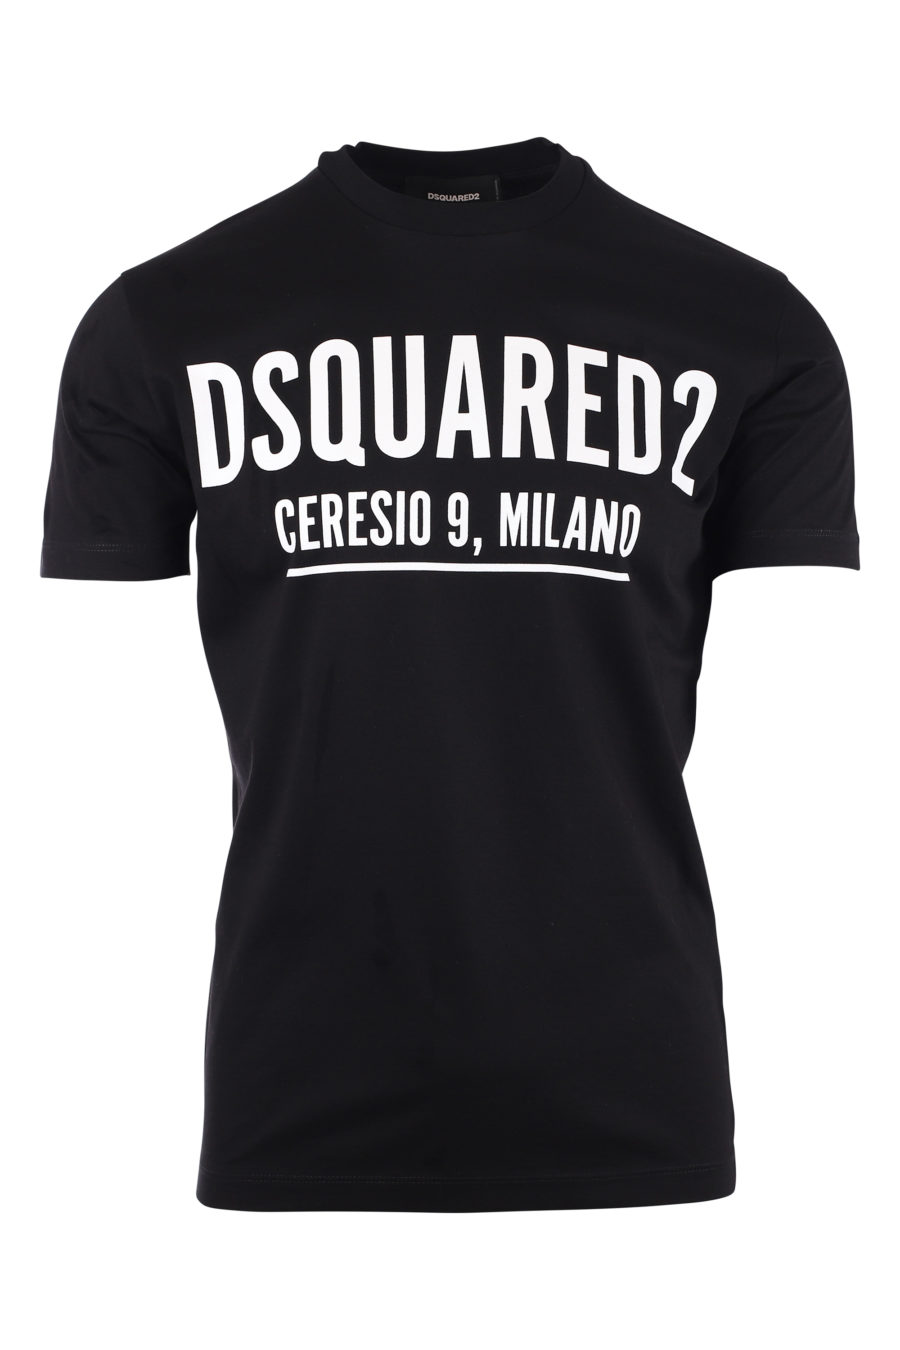 T-shirt schwarz mit Logo ceresio 9 - IMG 9726